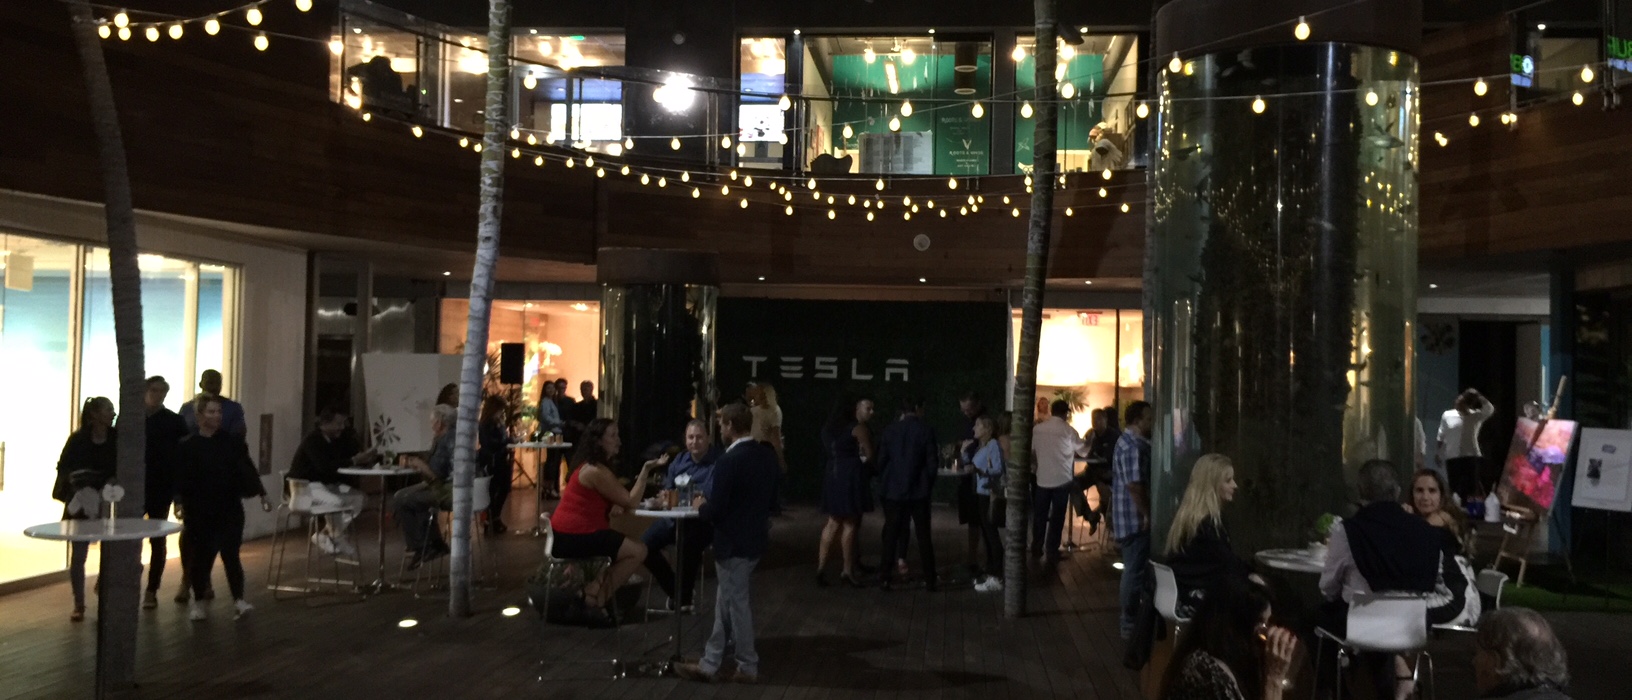 Malibu Tesla Event.jpg